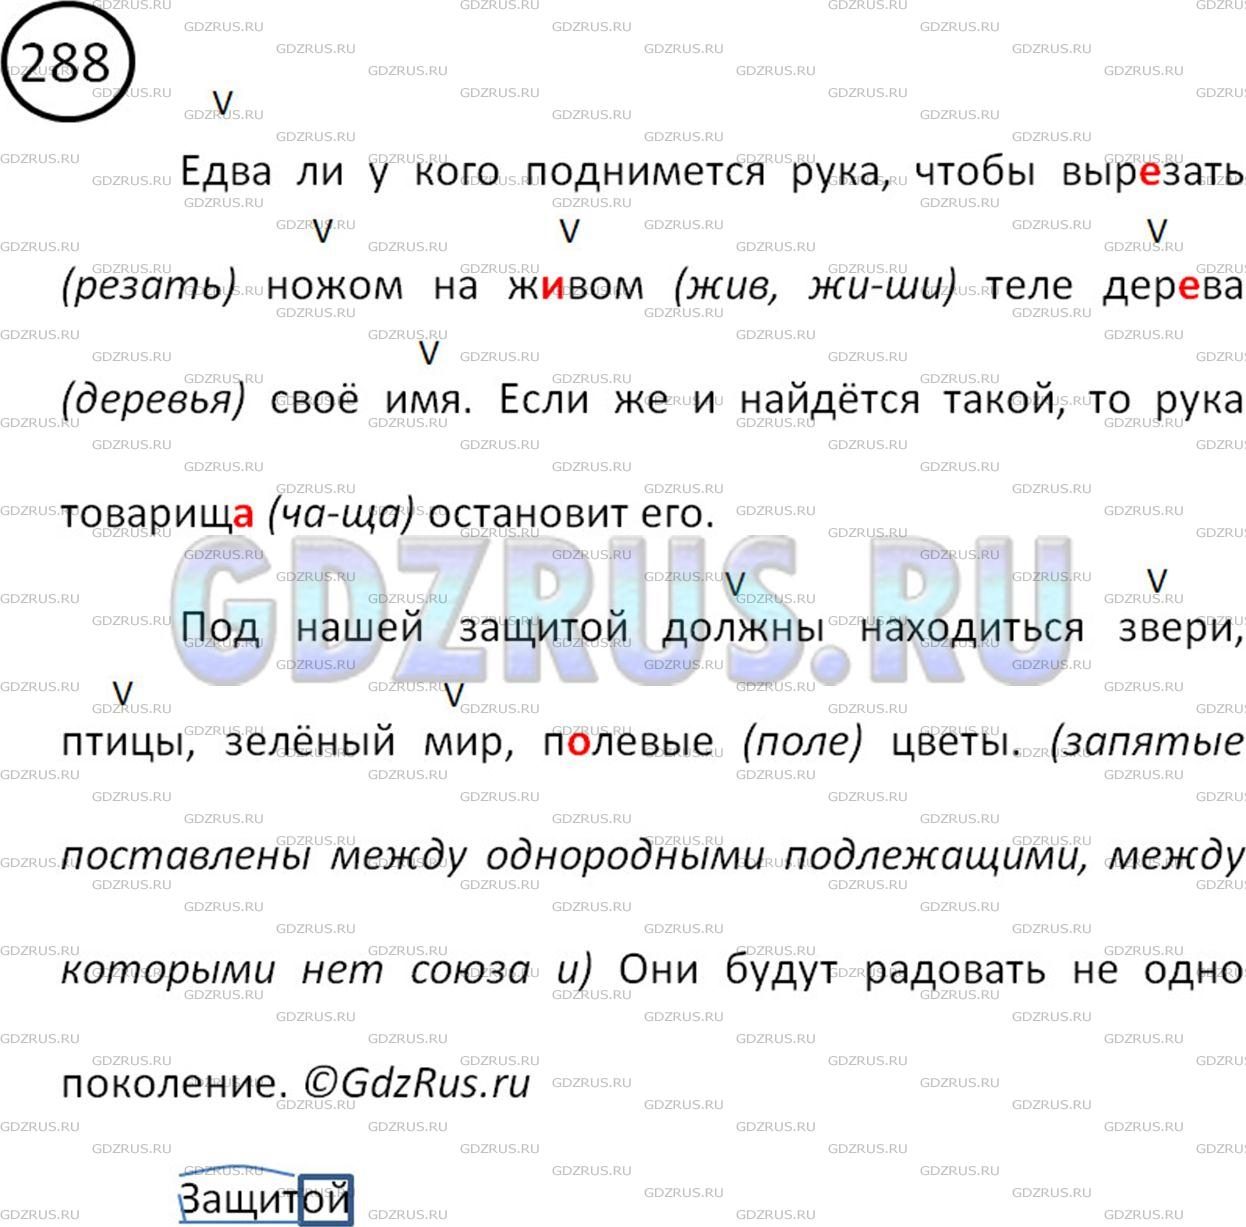 Фото решения 2: Номер №288 из ГДЗ по Русскому языку 5 класс: Ладыженская Т.А. 2012г.